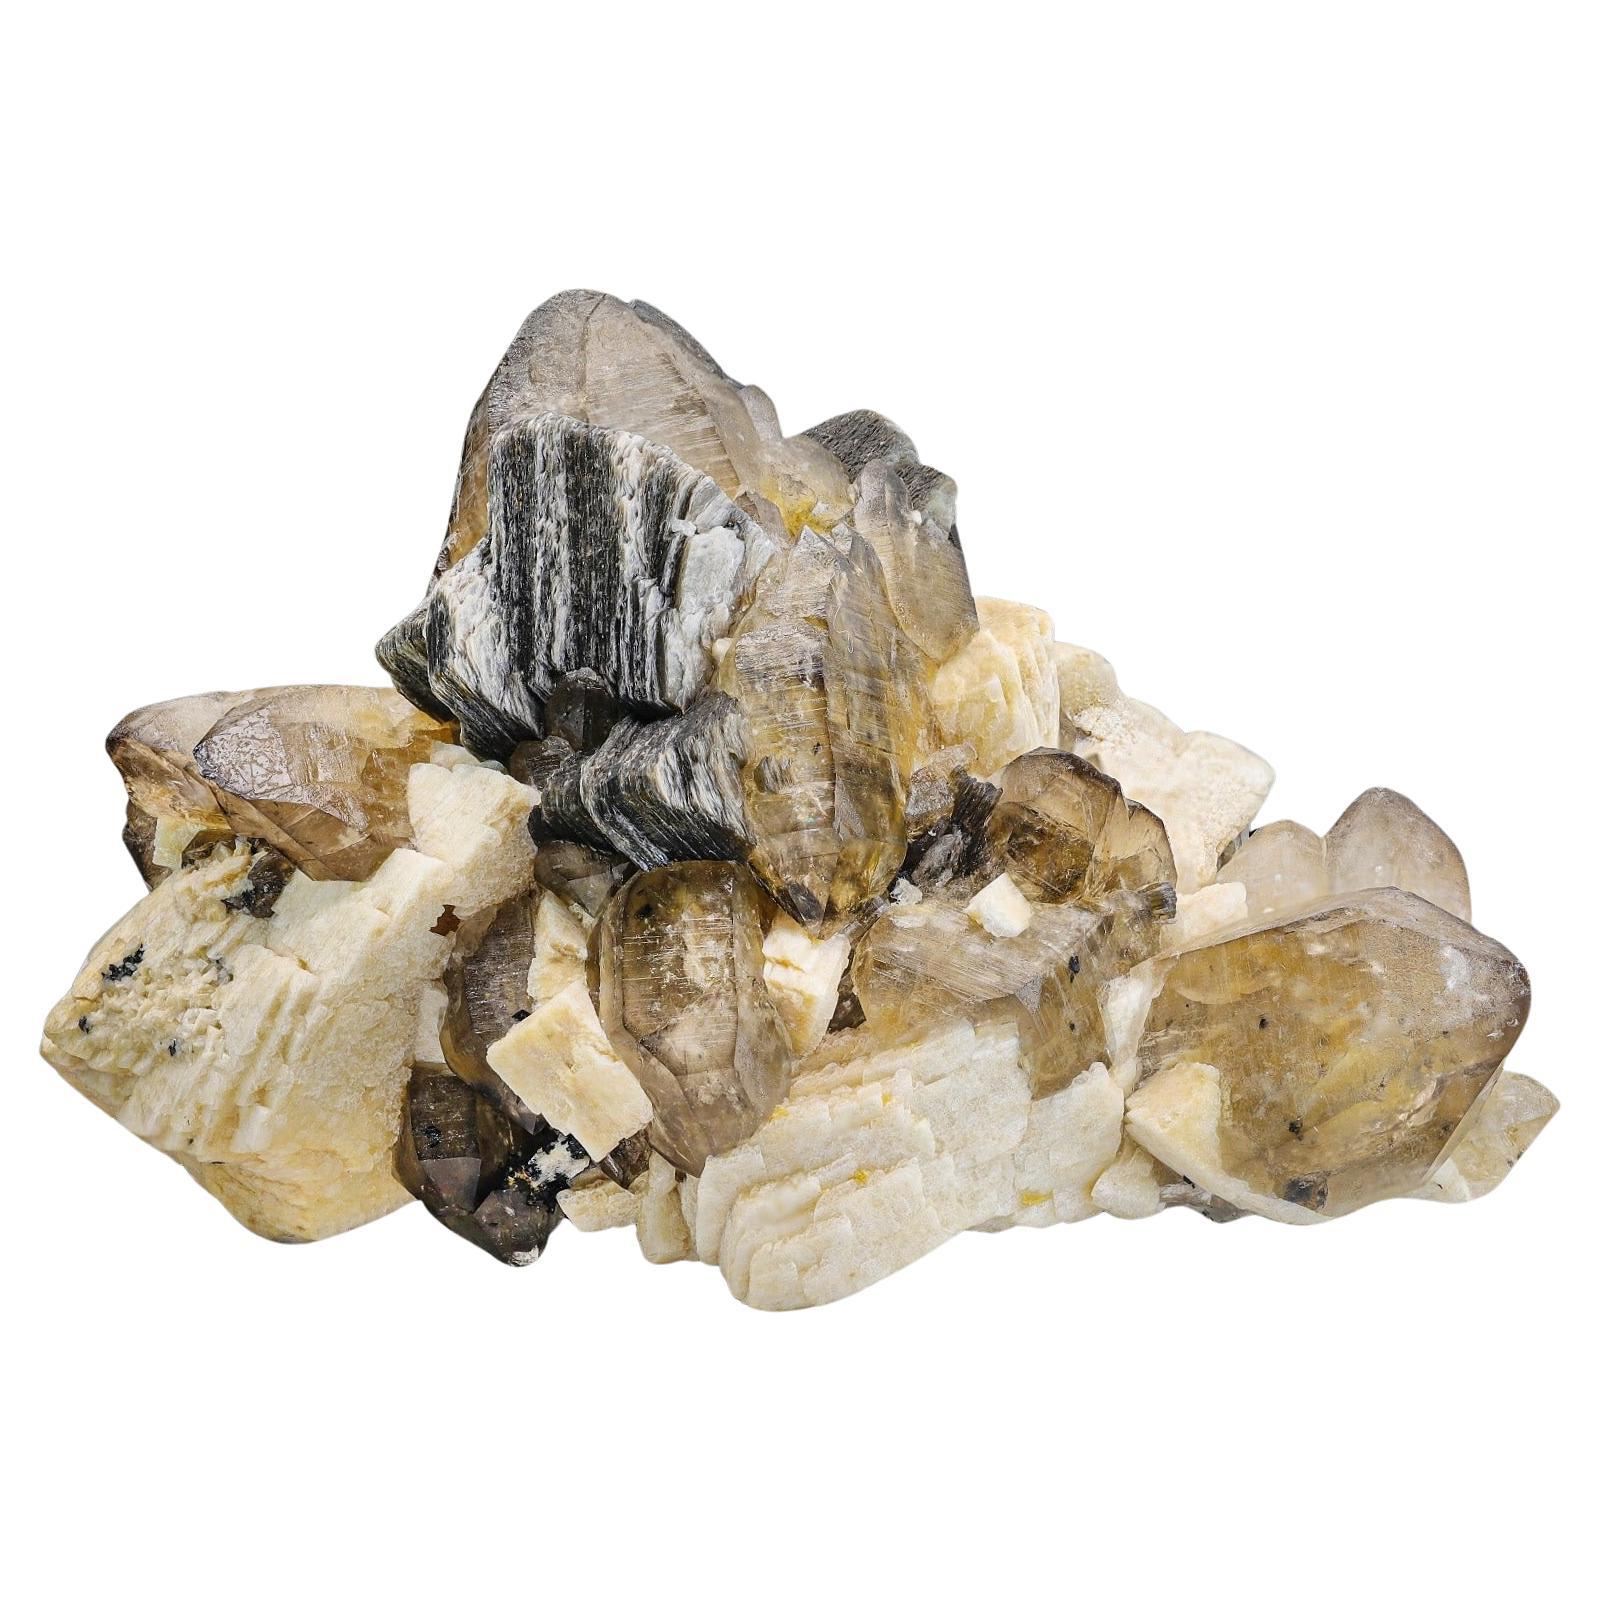 Large Cabinet Museum Level Specimen 6kg Of Smoky Quartz Crystals for Sale